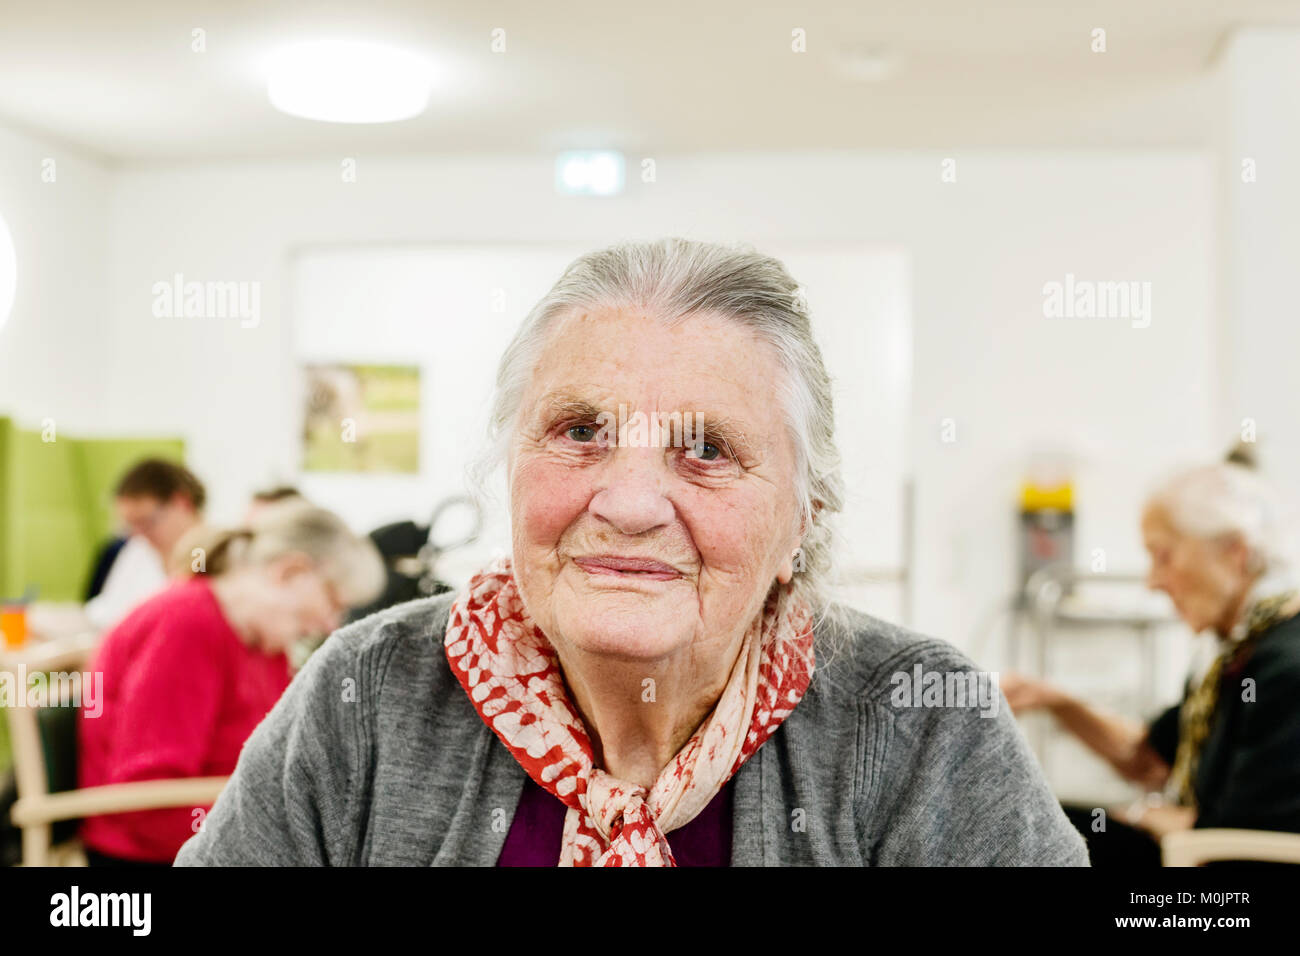 Senior déments, Portrait, dans une maison de retraite, Allemagne Banque D'Images